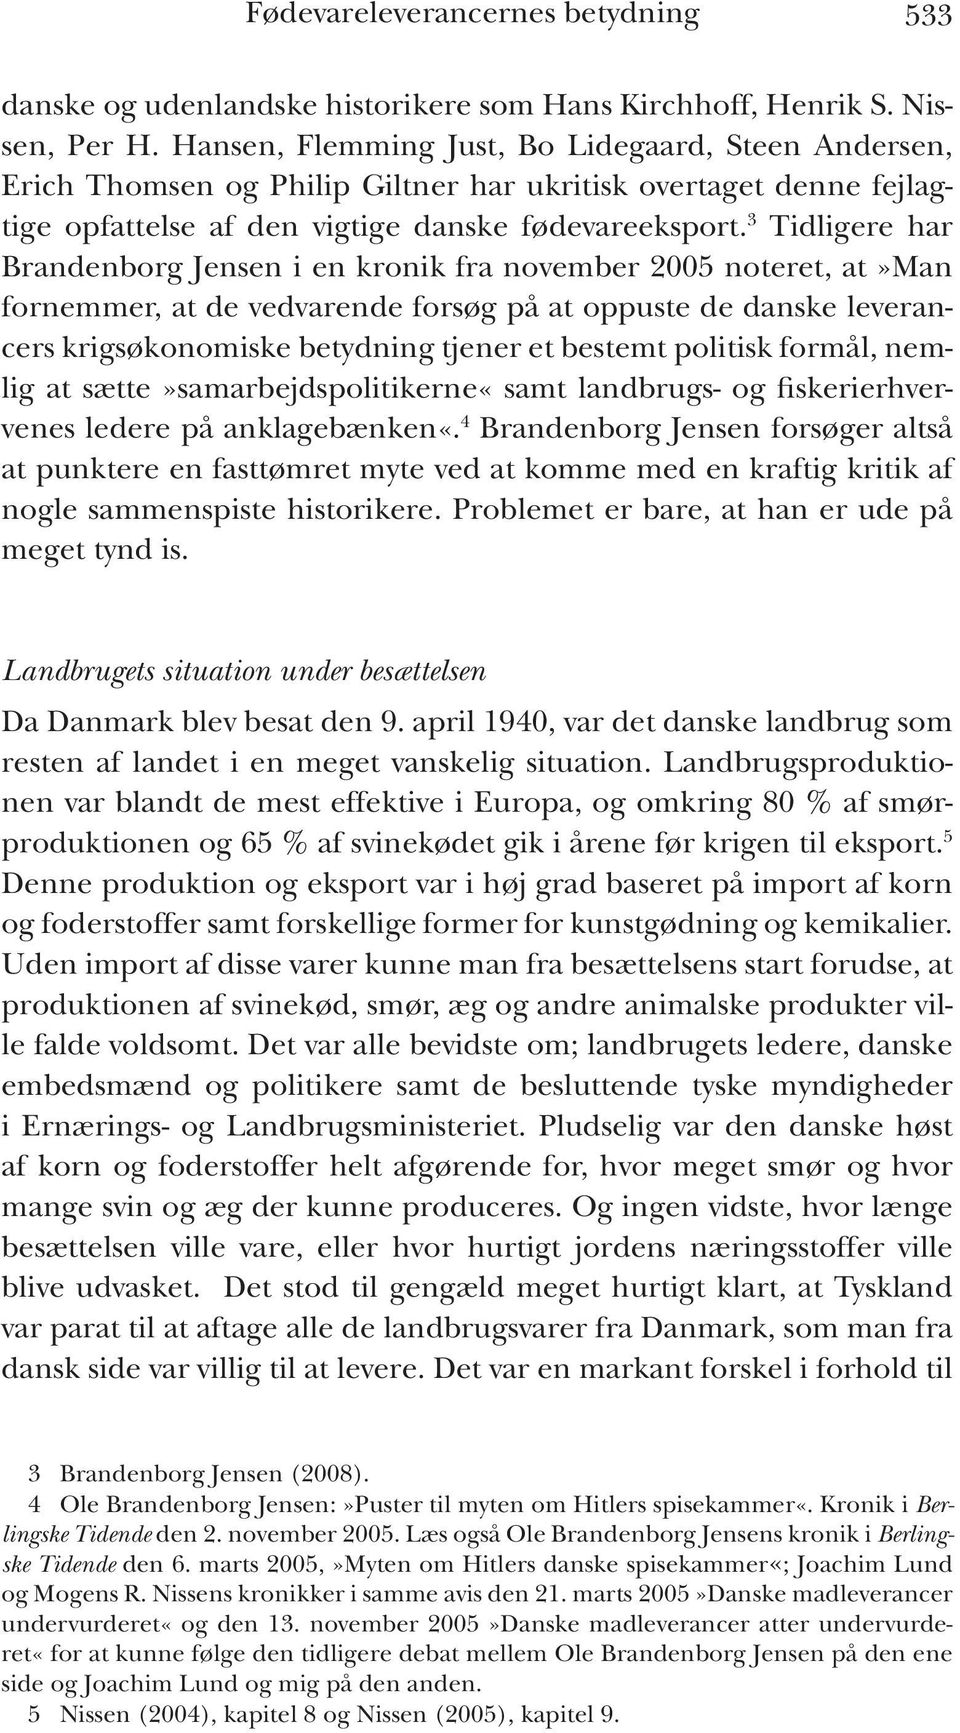 3 Tidligere har Brandenborg Jensen i en kronik fra november 2005 noteret, at»man fornemmer, at de vedvarende forsøg på at oppuste de danske leverancers krigsøkonomiske betydning tjener et bestemt